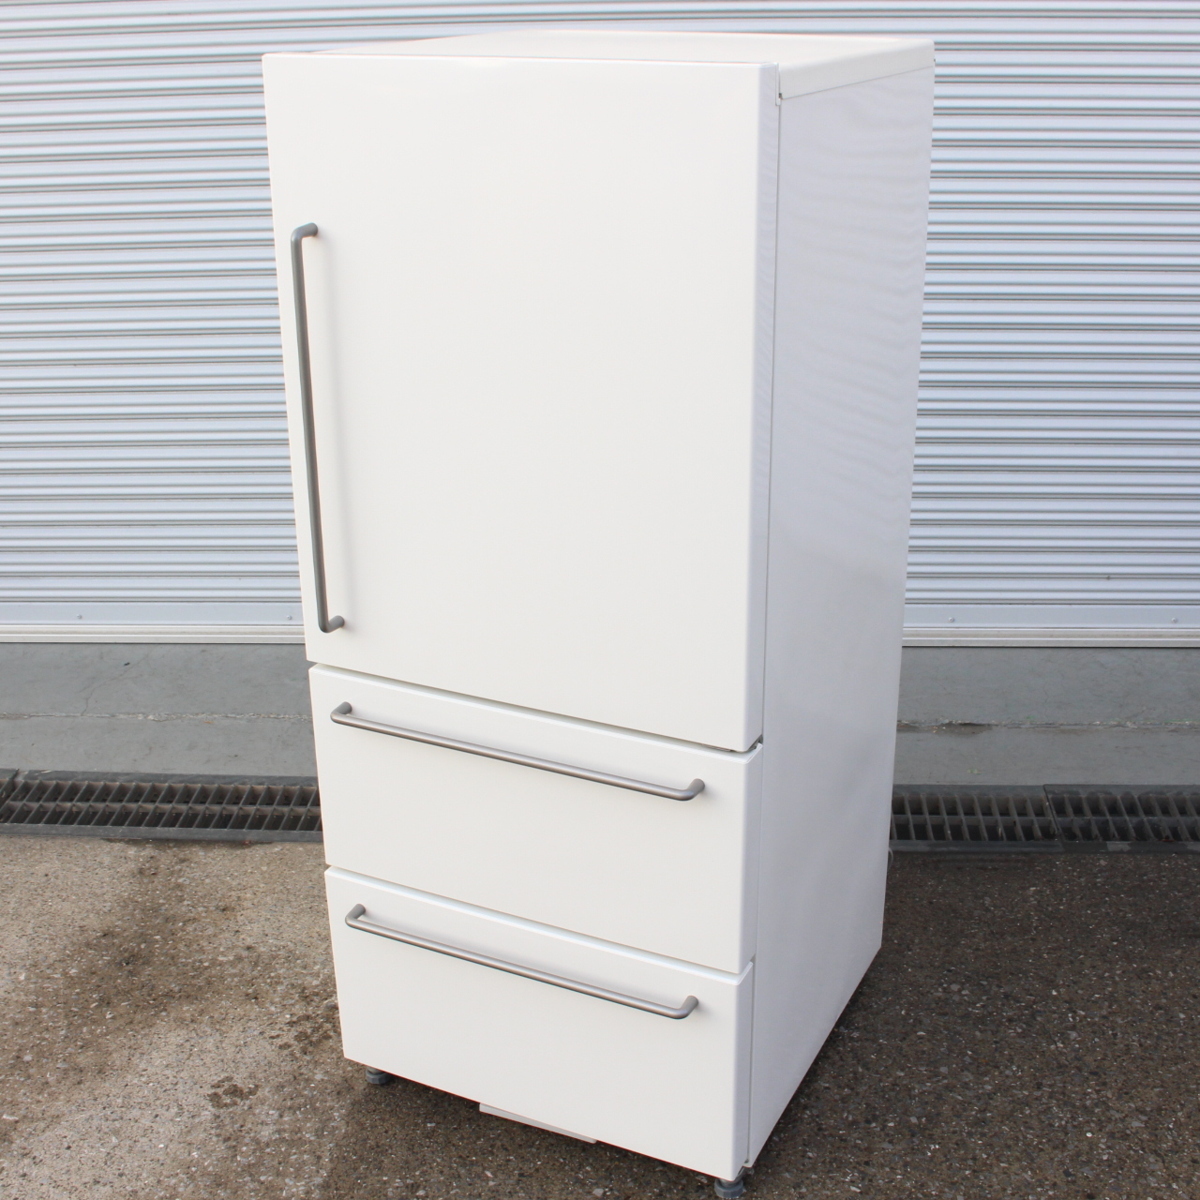 東京都武蔵野市にて 無印良品 ノンフロン冷凍冷蔵庫 MJ-R27A 2015年製 を出張買取させて頂きました。